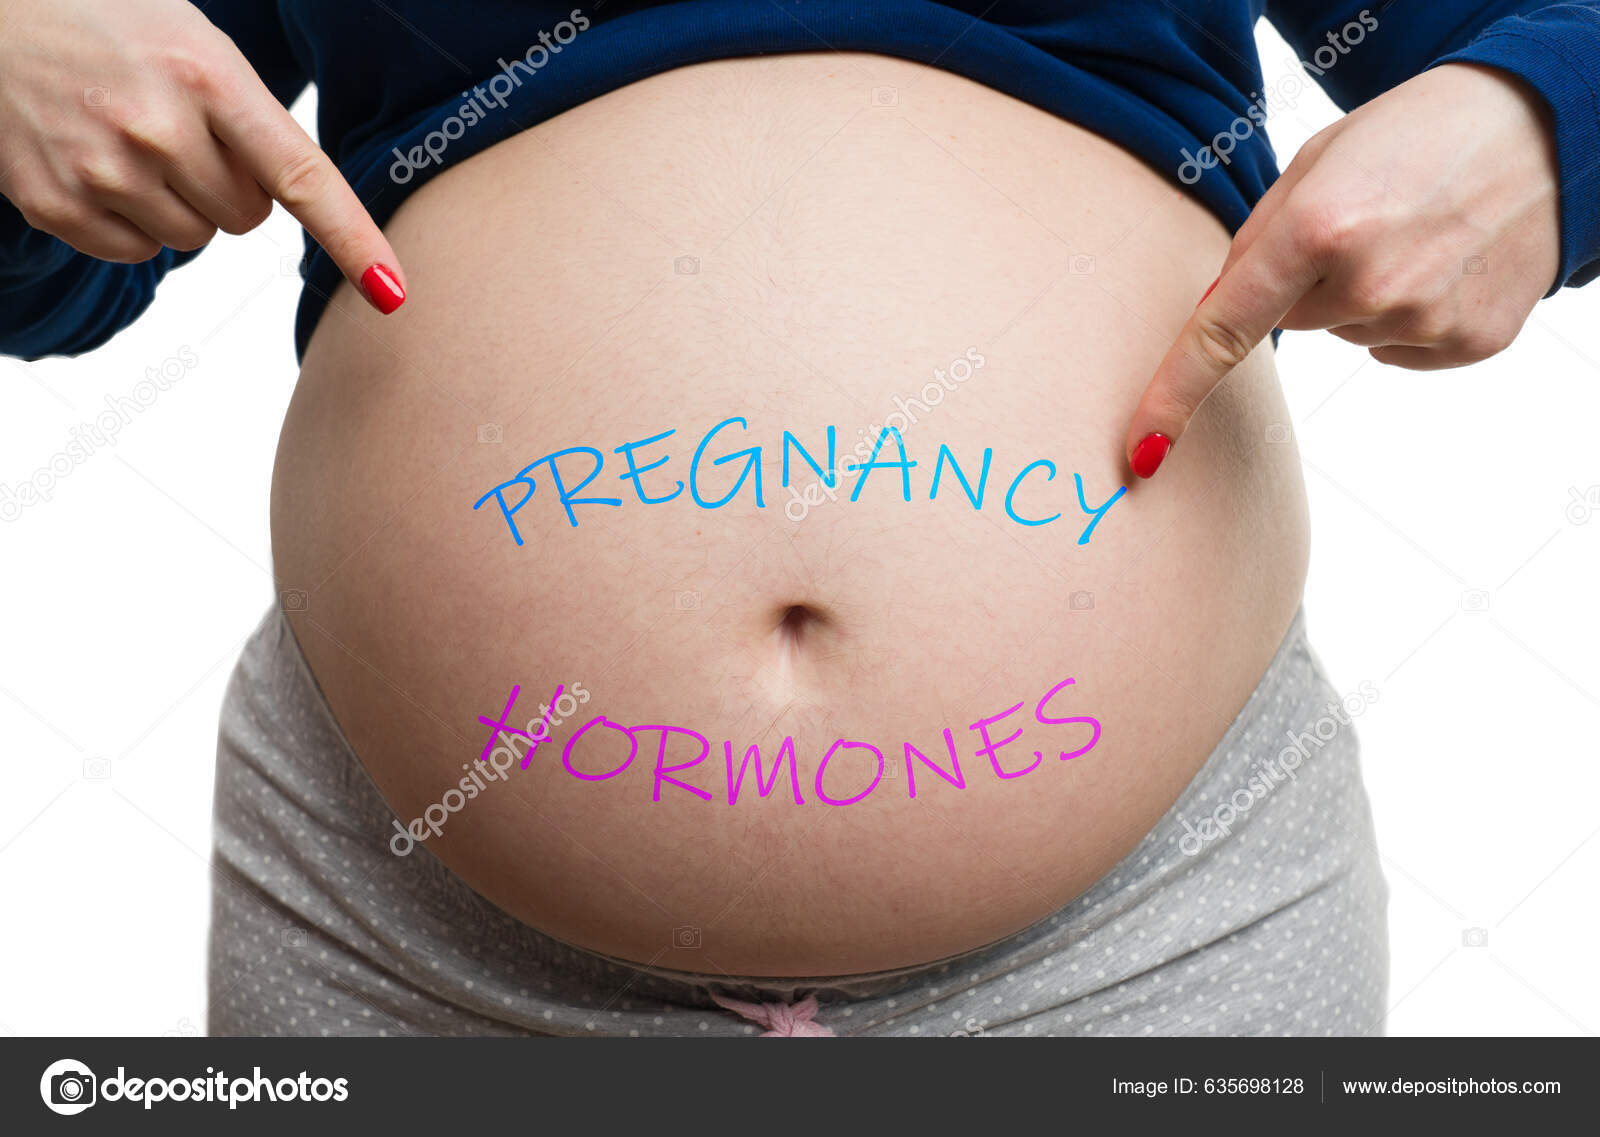 Живот беременной: изображения без лицензионных платежей